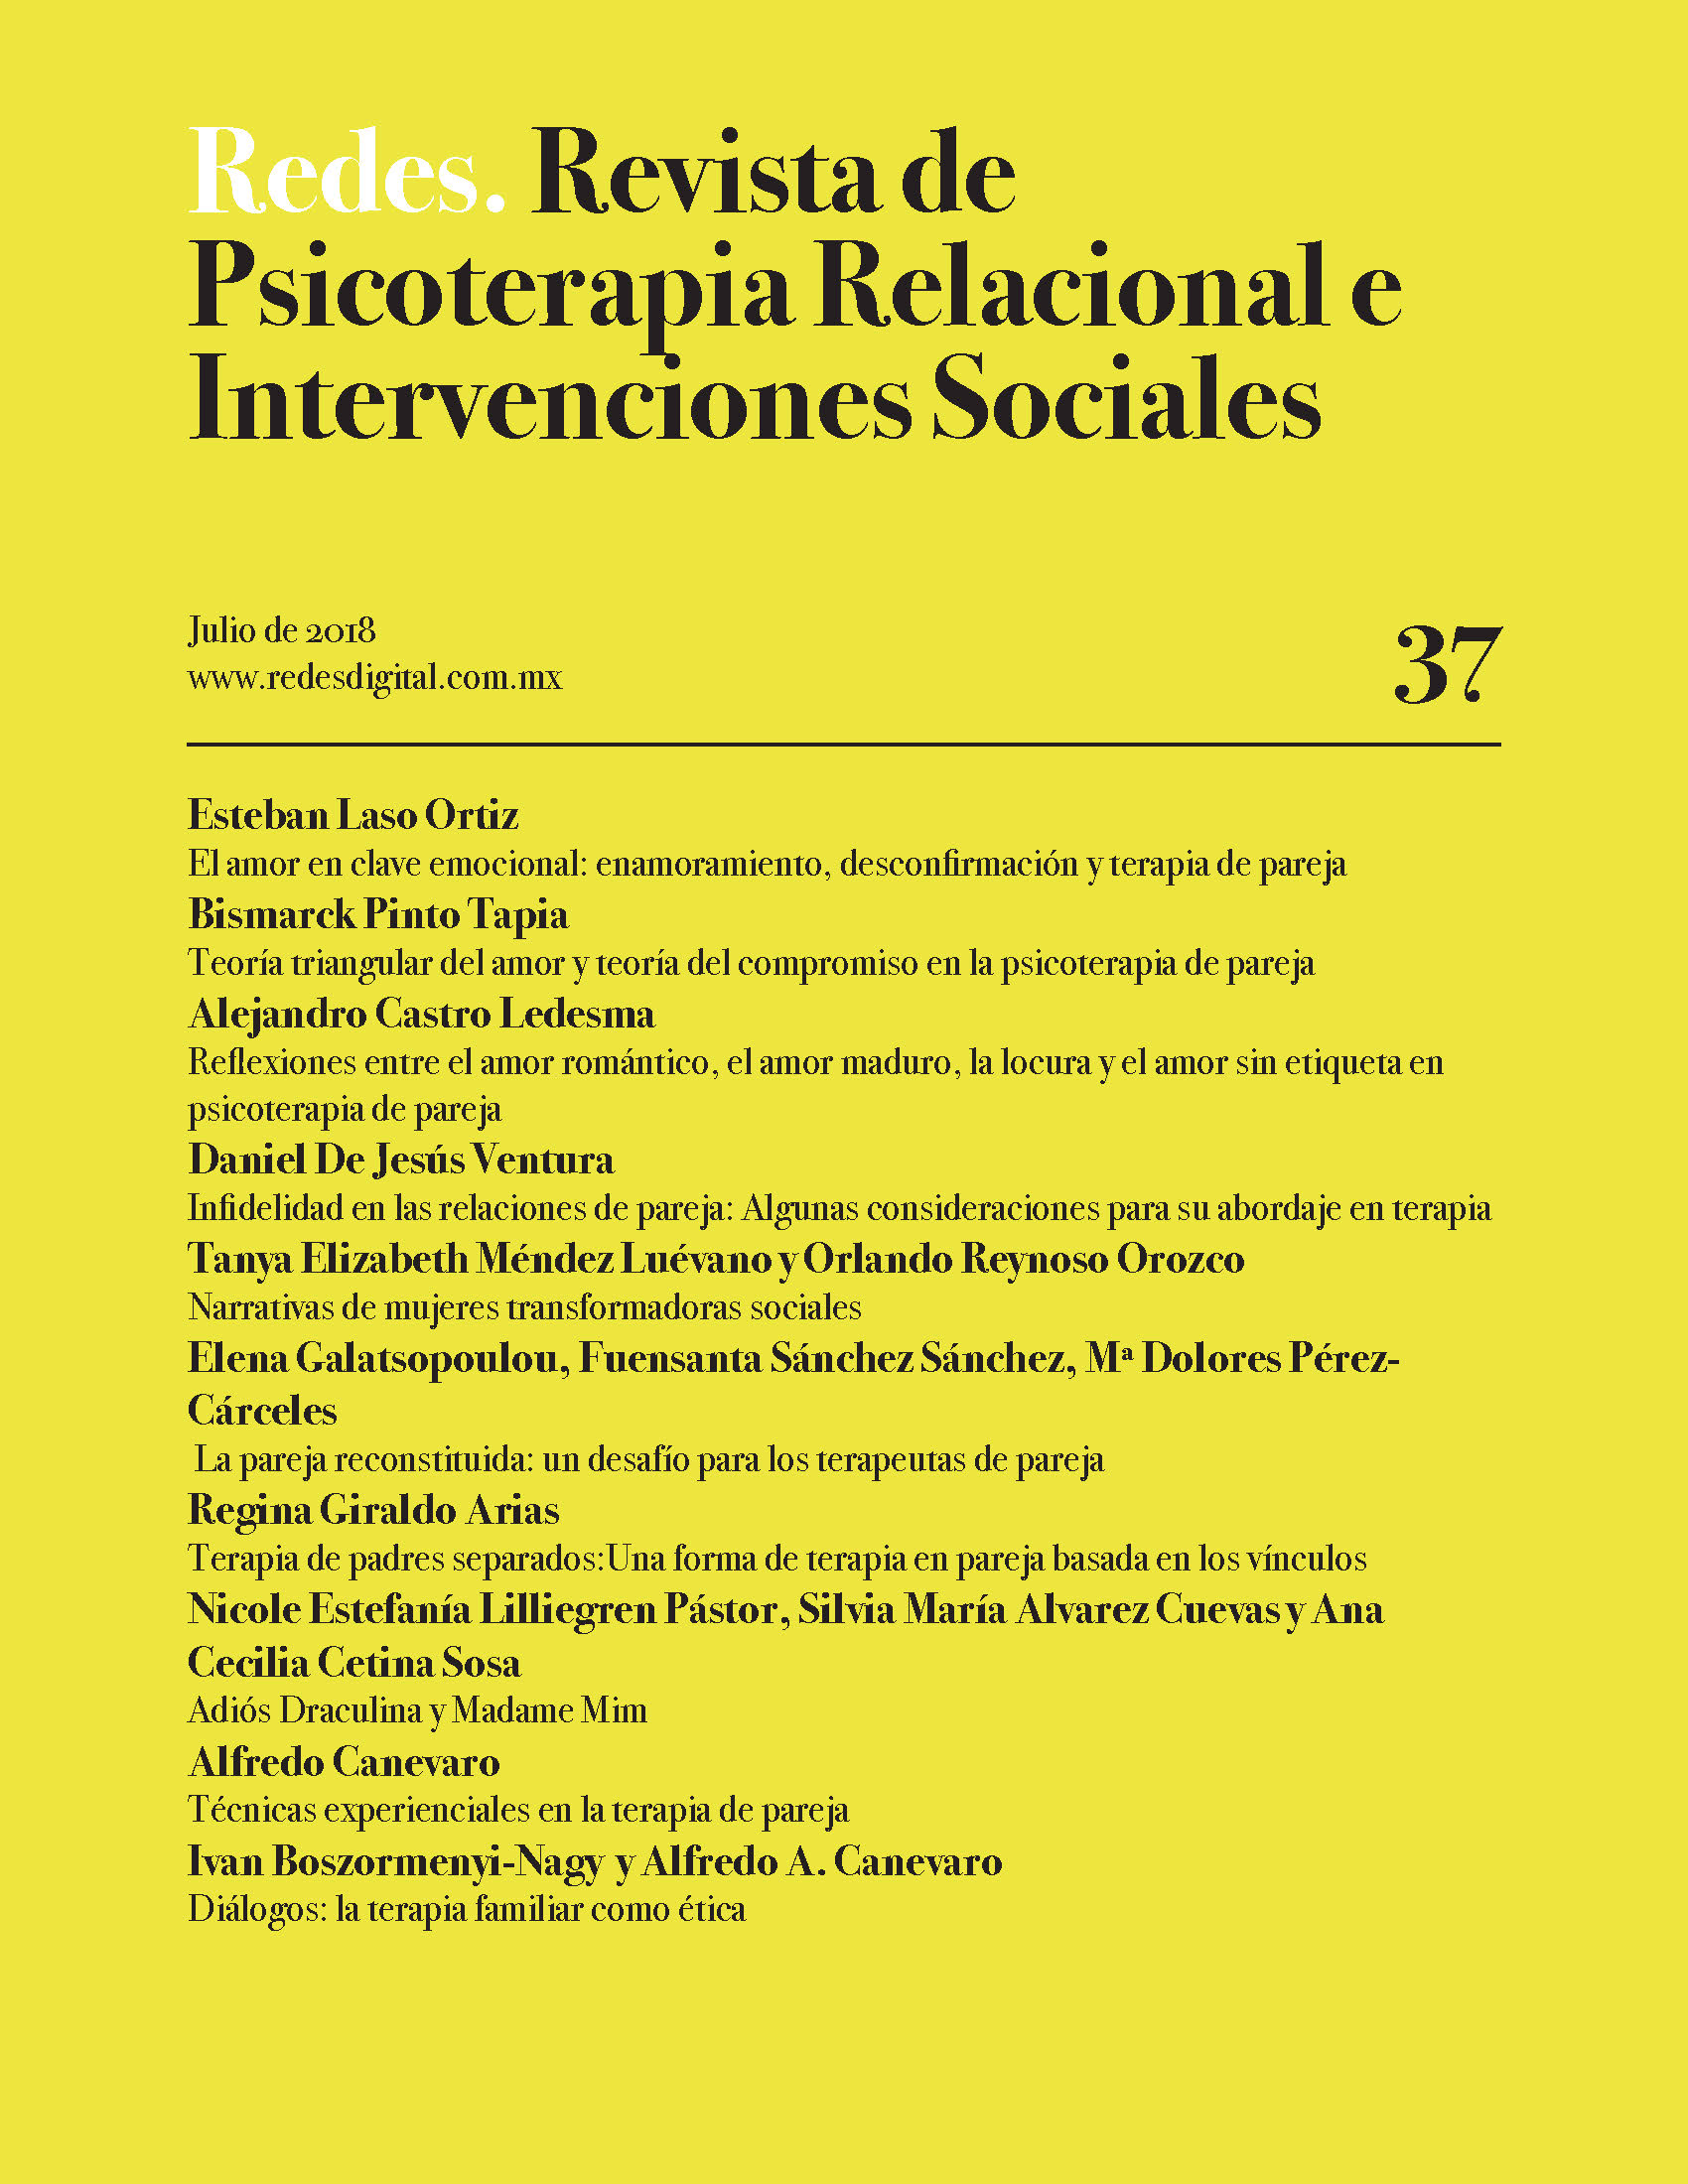 Redes. Revista de Psicoterapia Relacional e Intervenciones Sociales. Julio, 2018